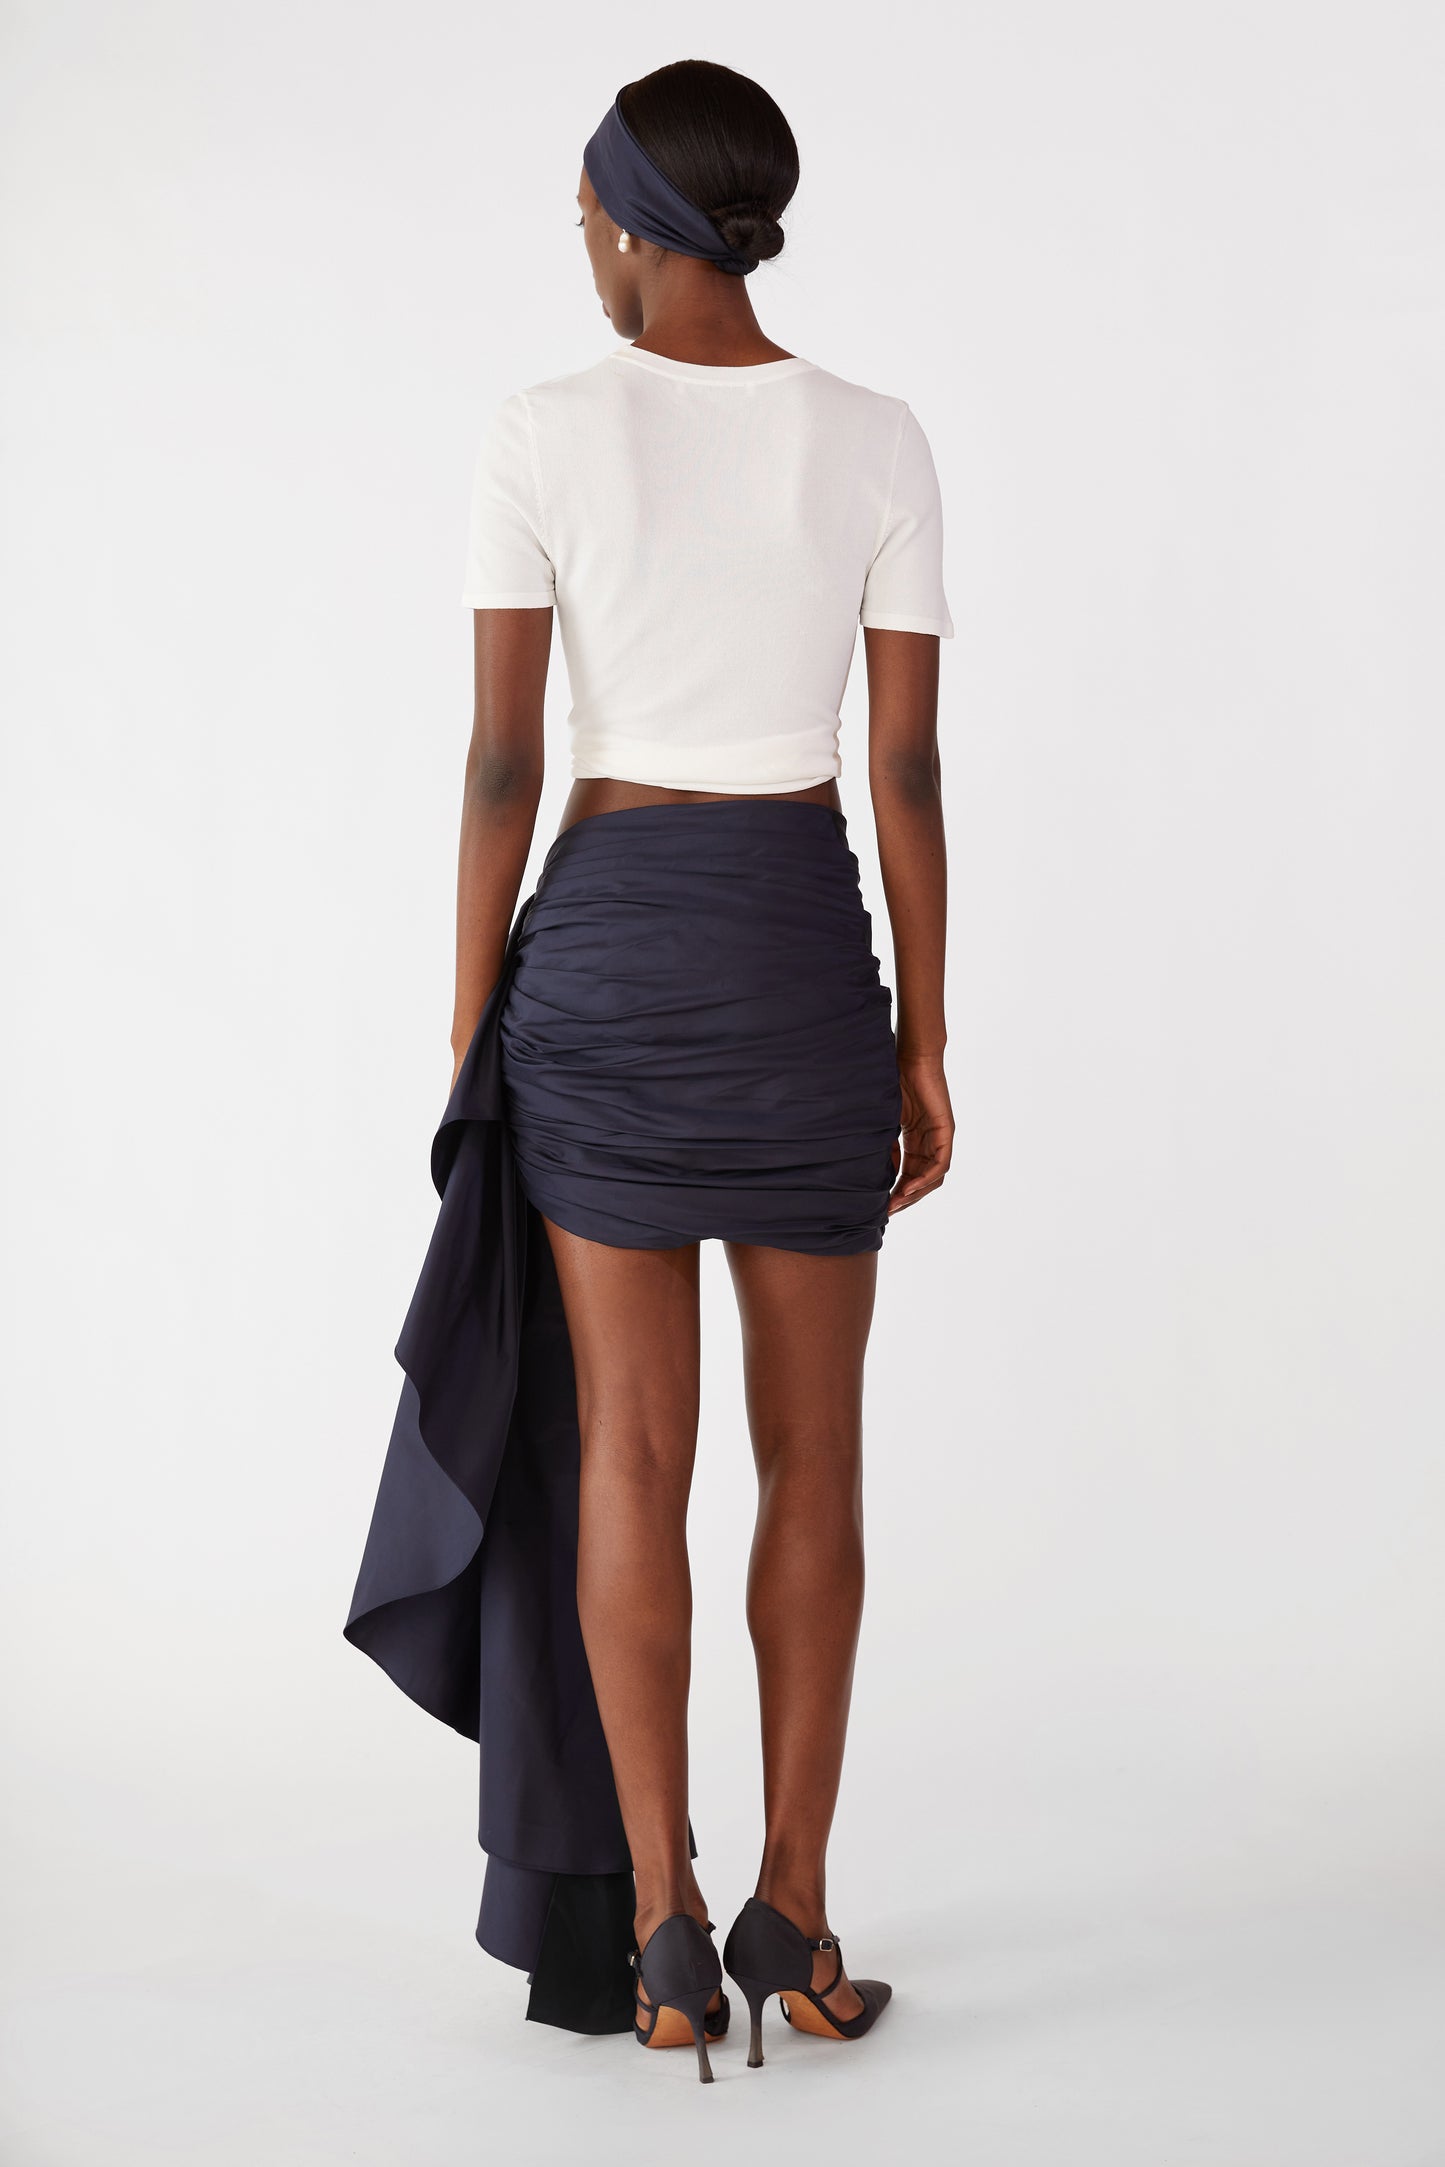 Antoinette Cascading Skirt